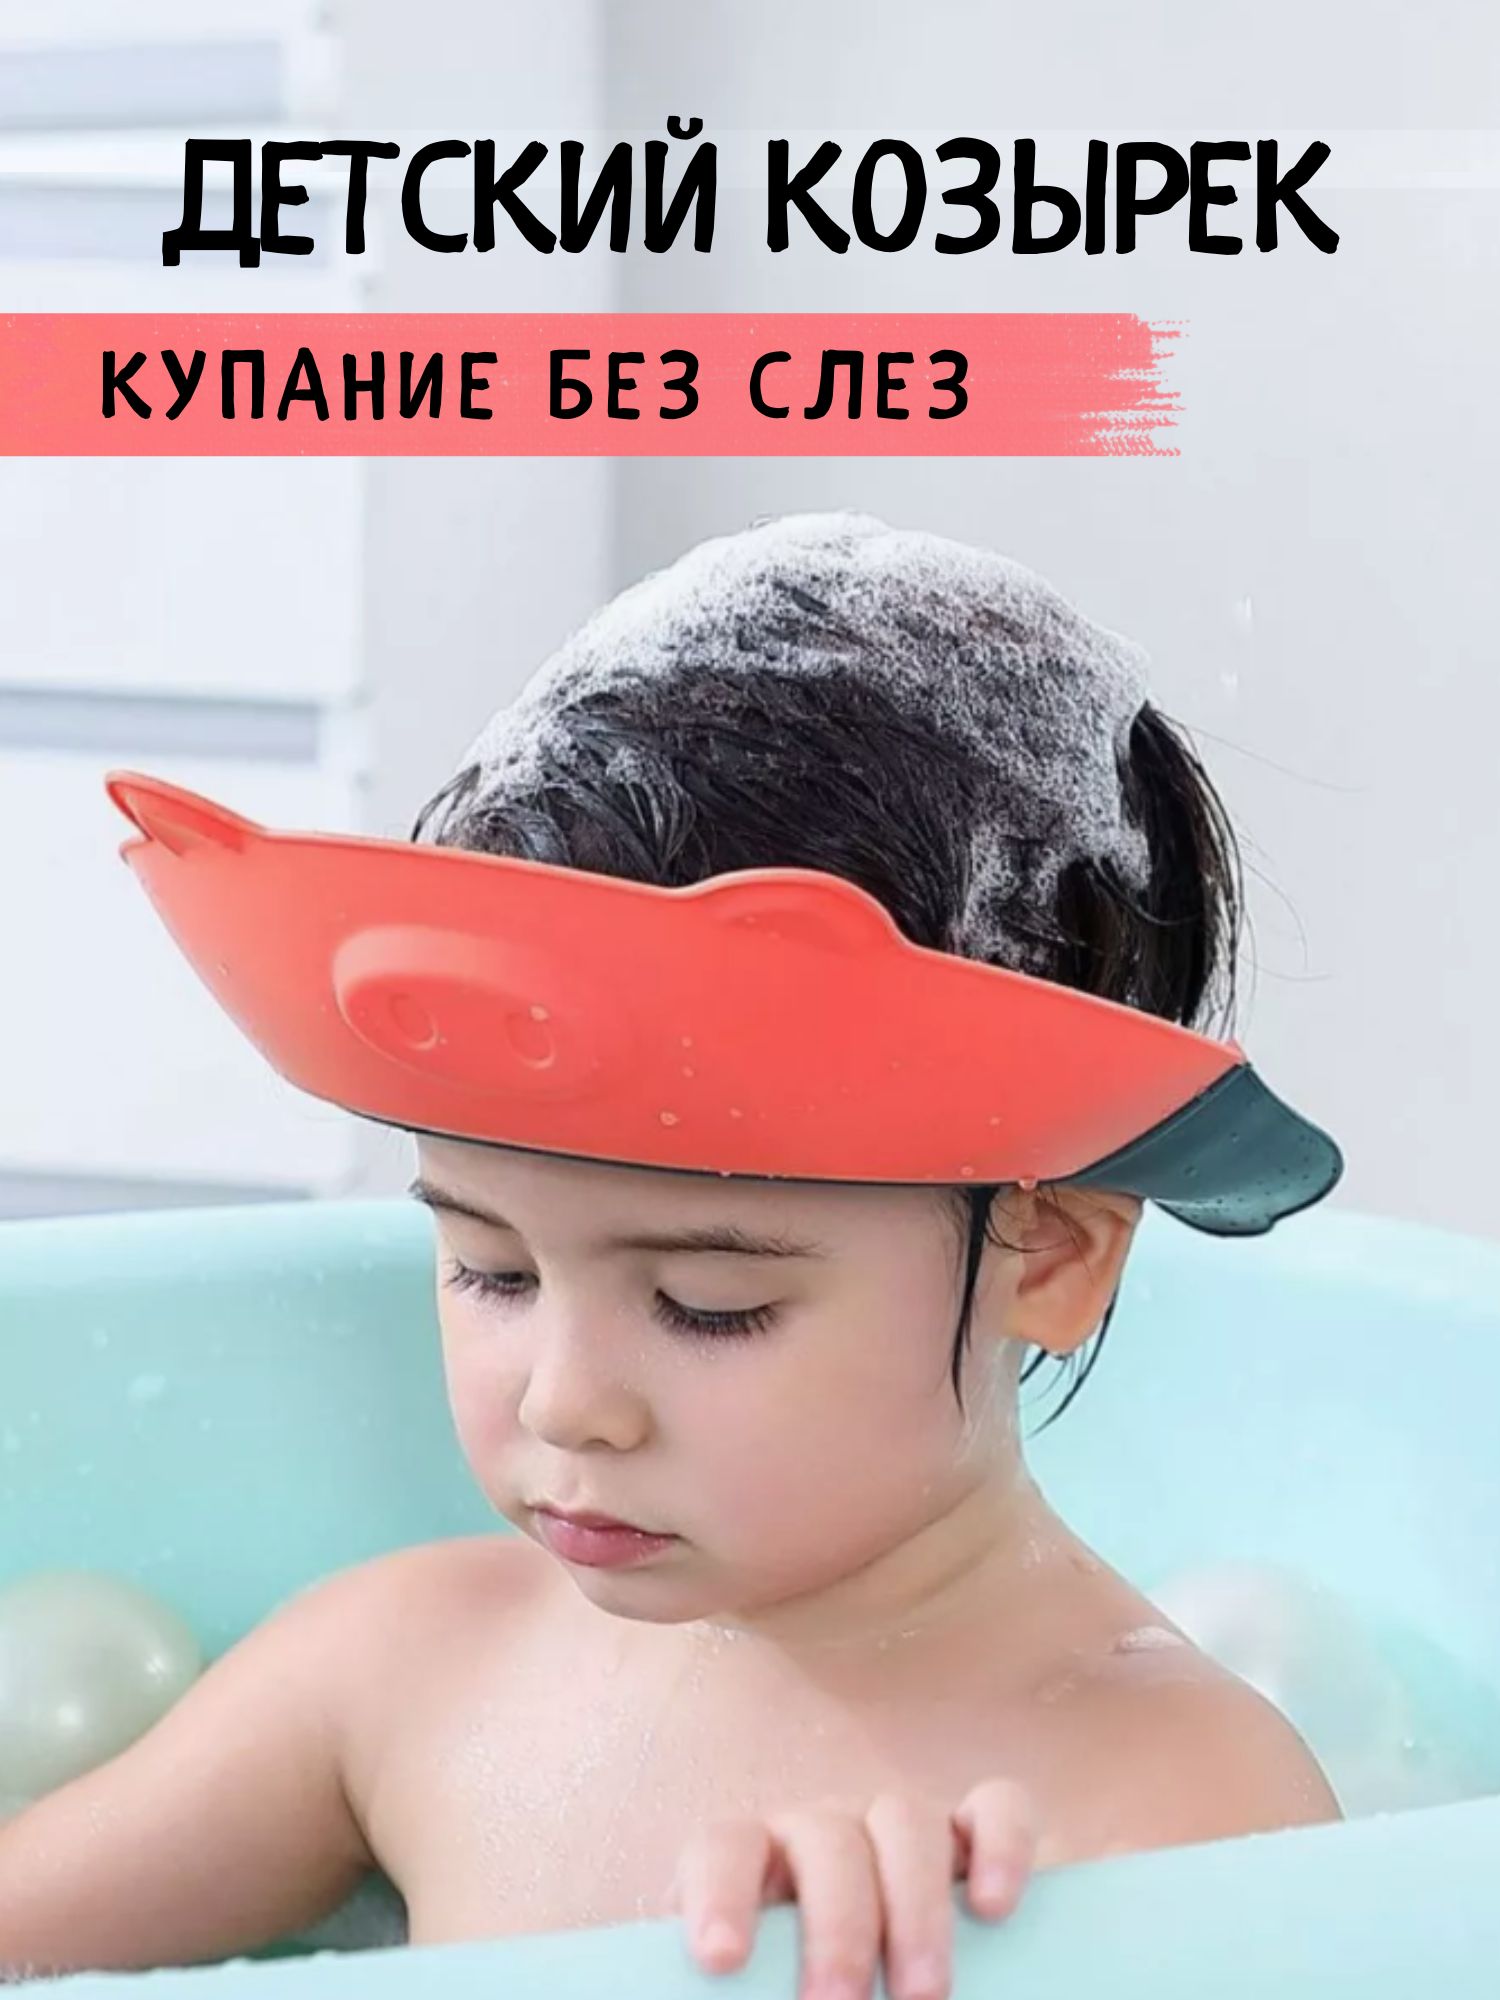 Защитный козырек ободок для купания и мытья головы детский